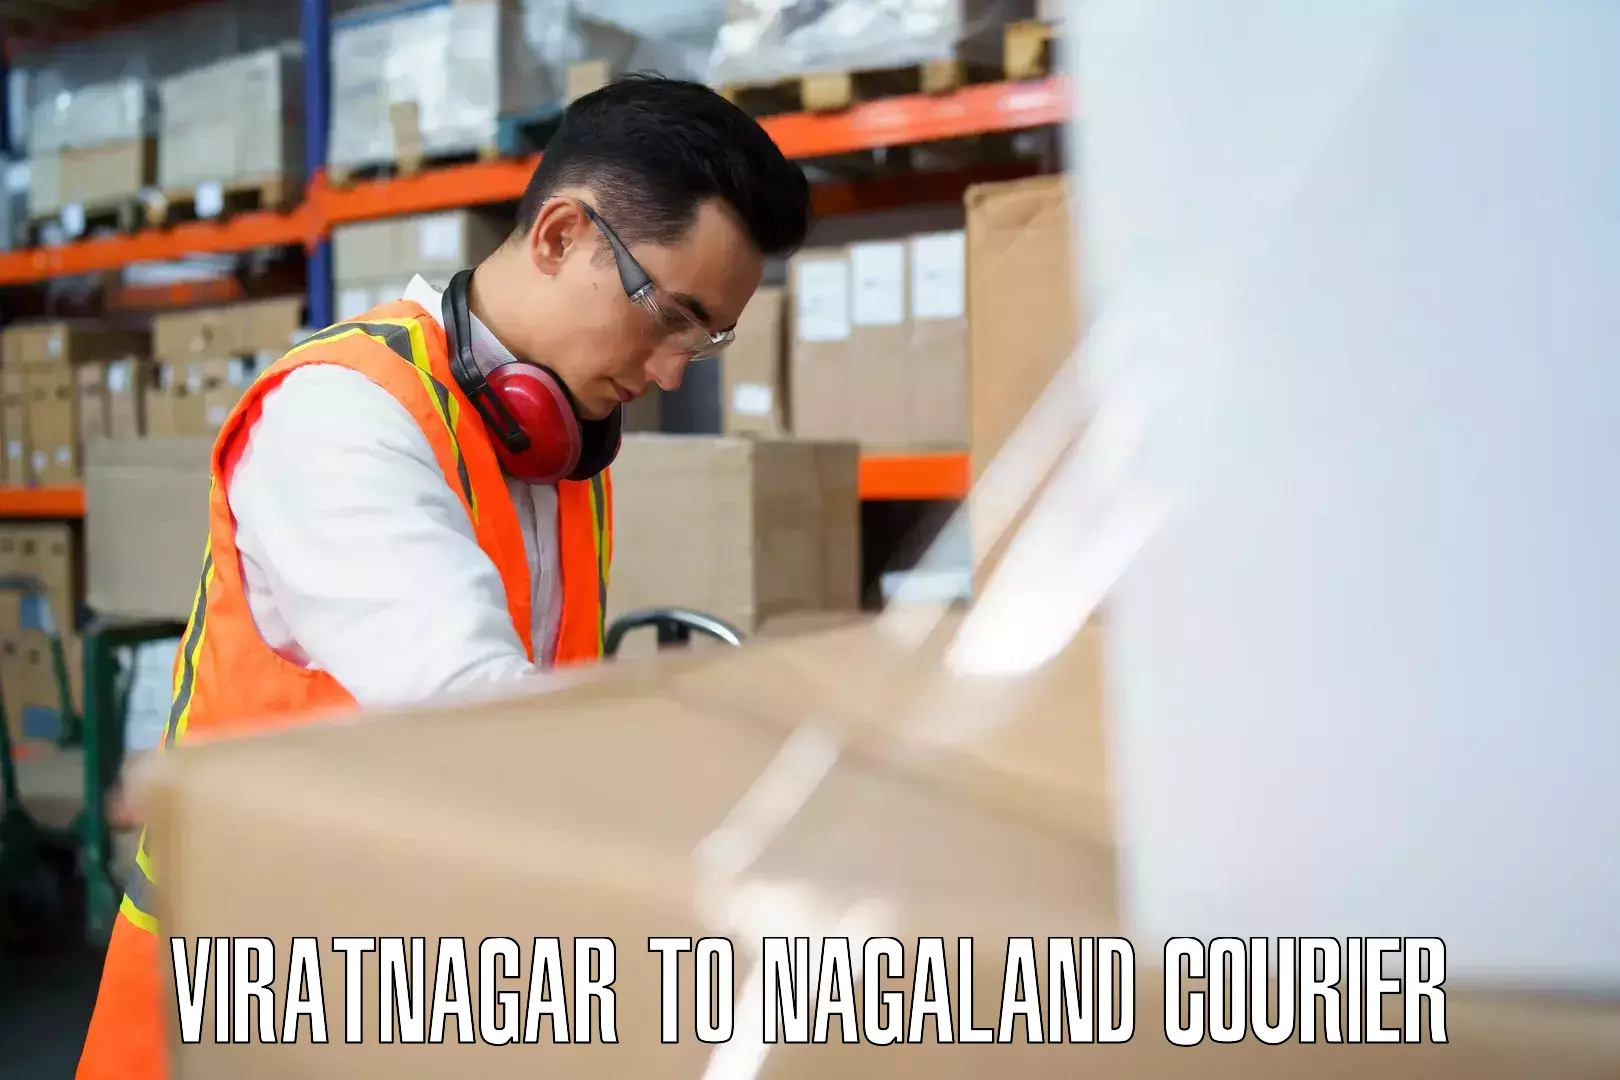 Baggage transport innovation Viratnagar to Nagaland